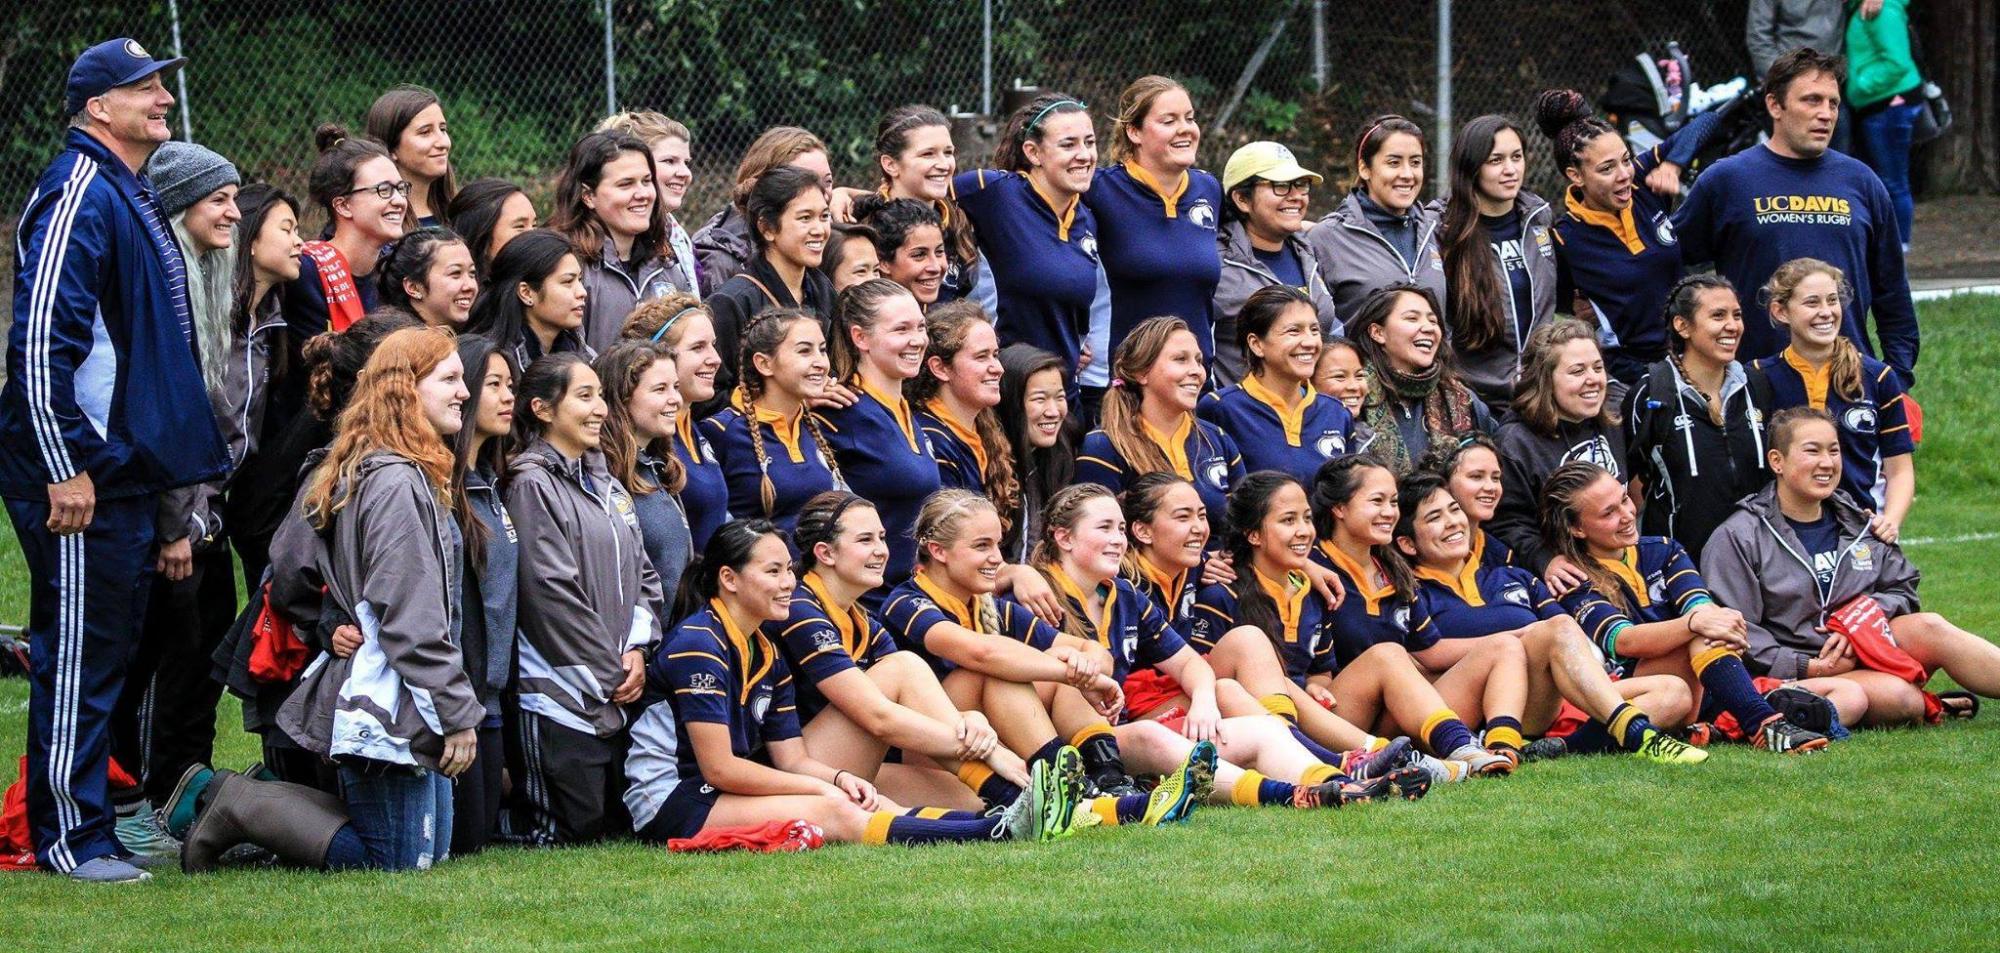 The UC Davis women's rugby team.